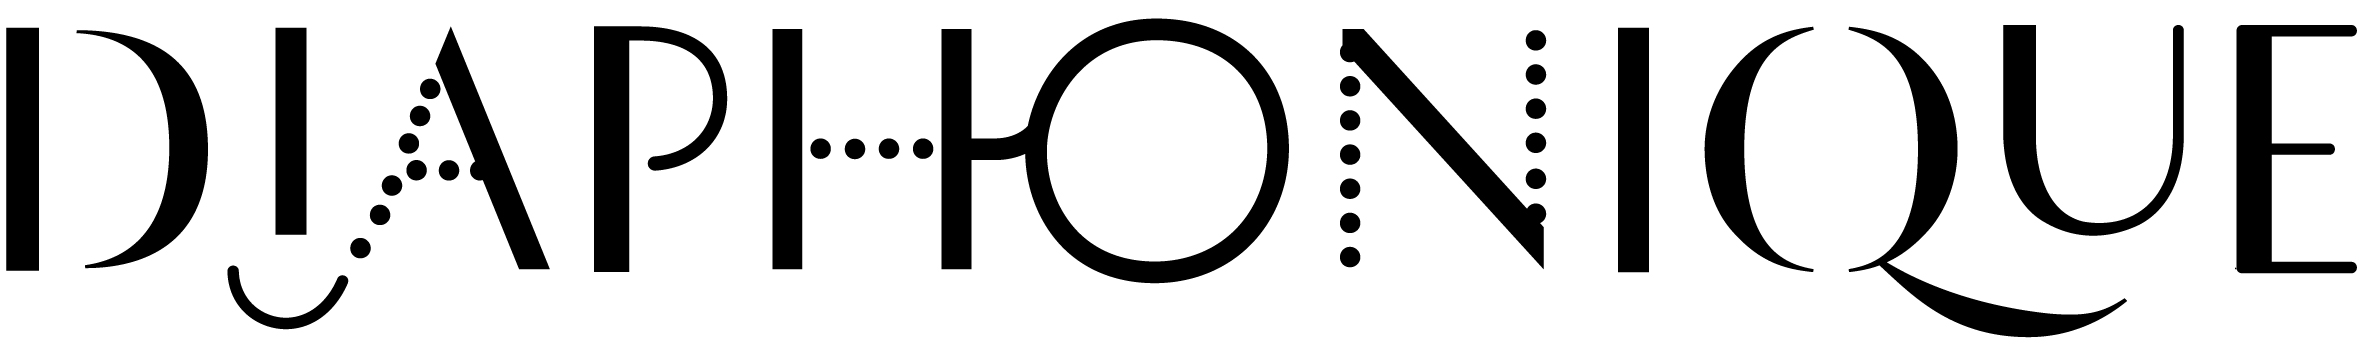 diaphonique logo_jpg_noir 1